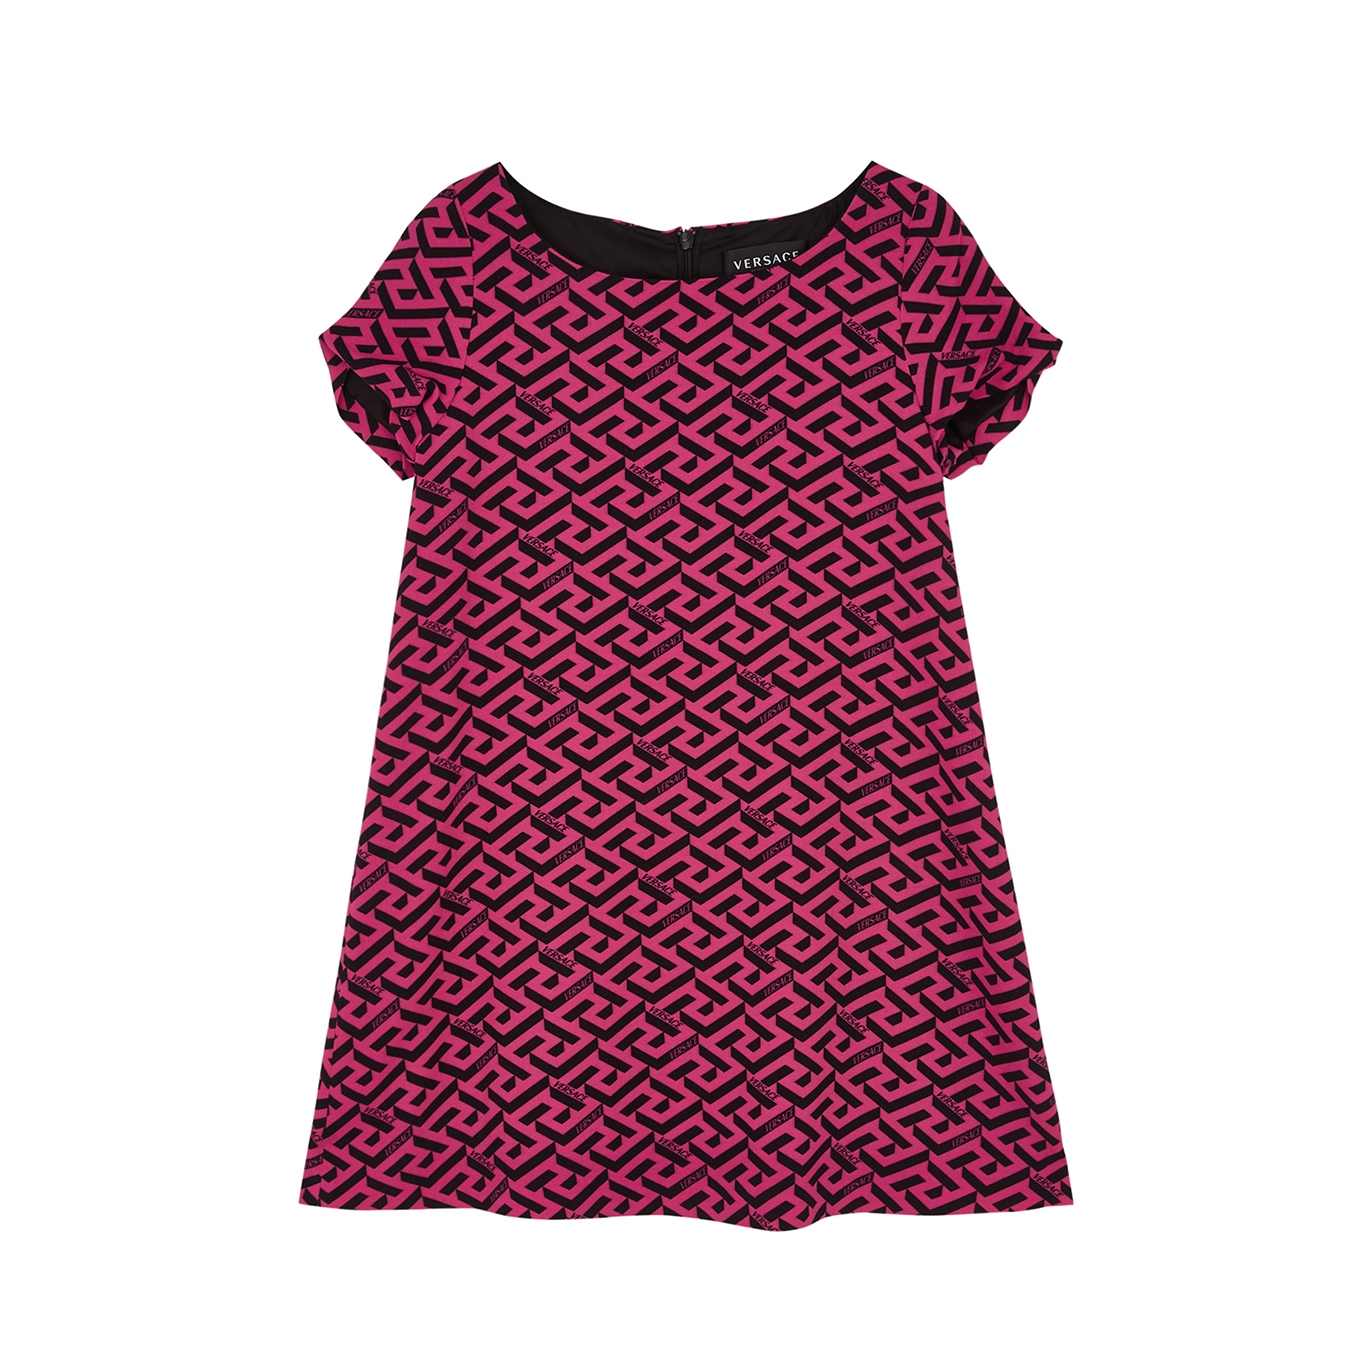 Versace Kids Pink Printed Crepe Dress (8-12 Years) - Pink/Black - 10 Years